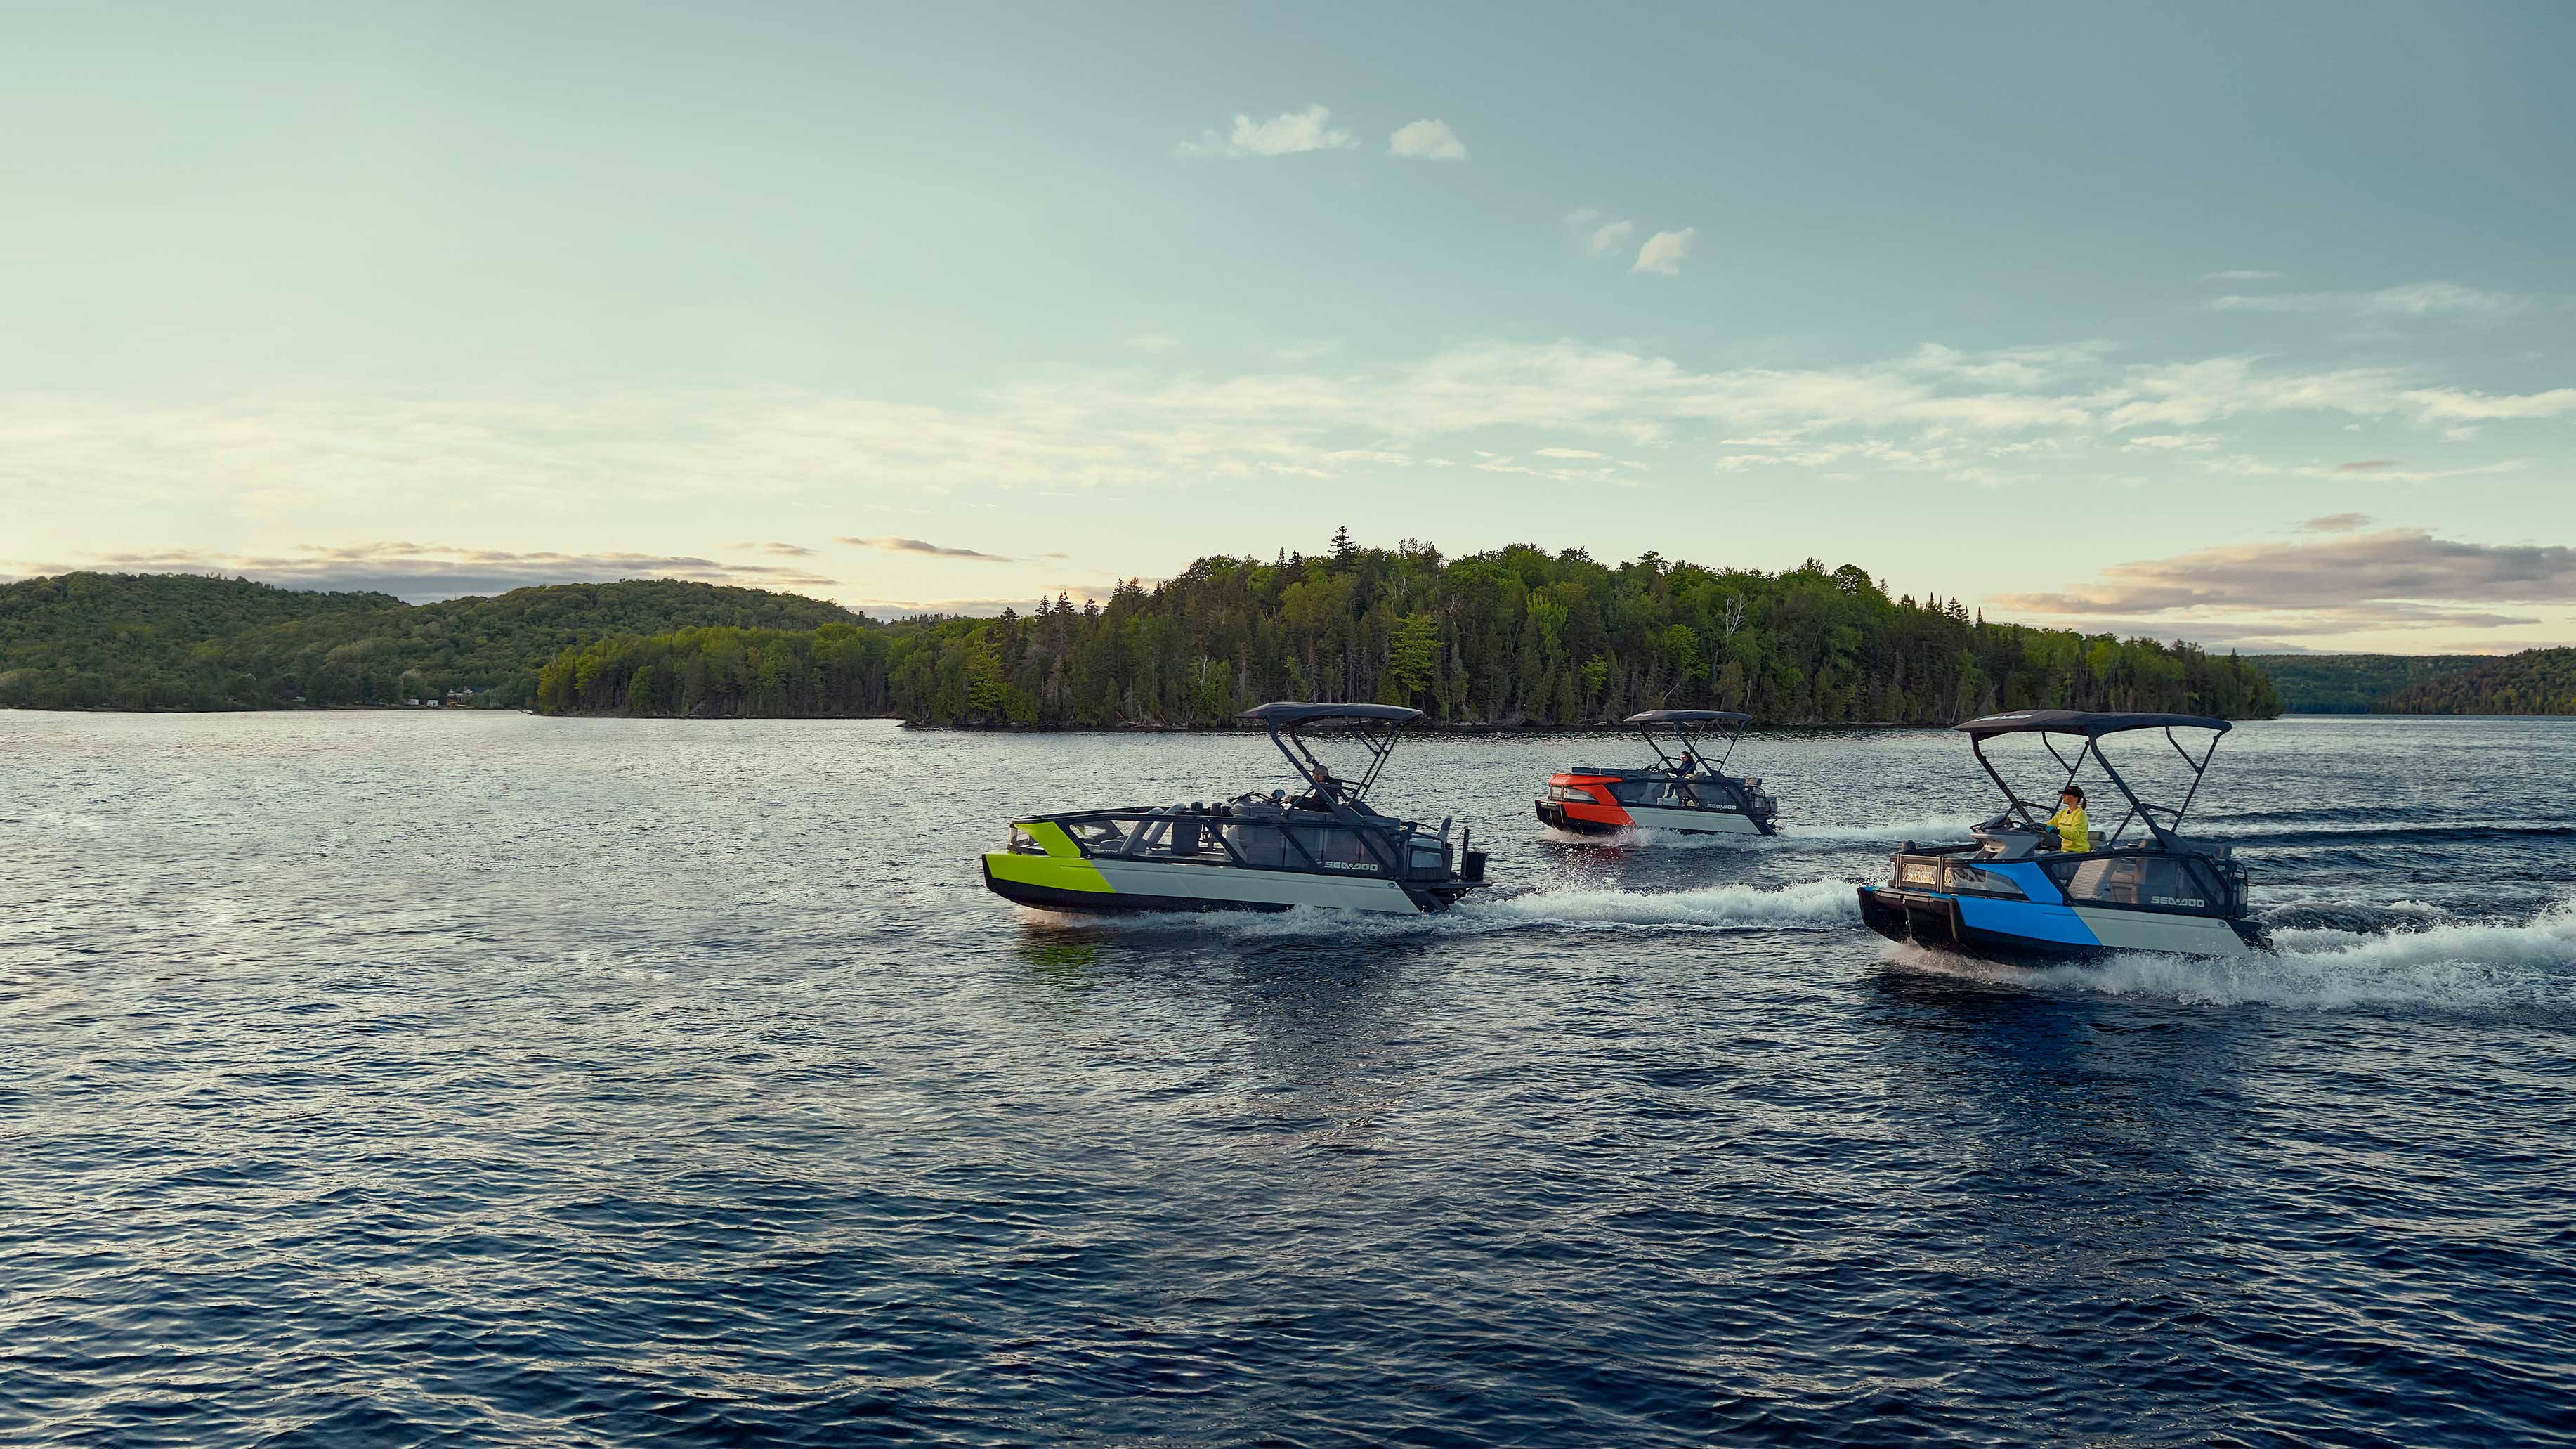 Three Sea-Doo switch cruising on a lake